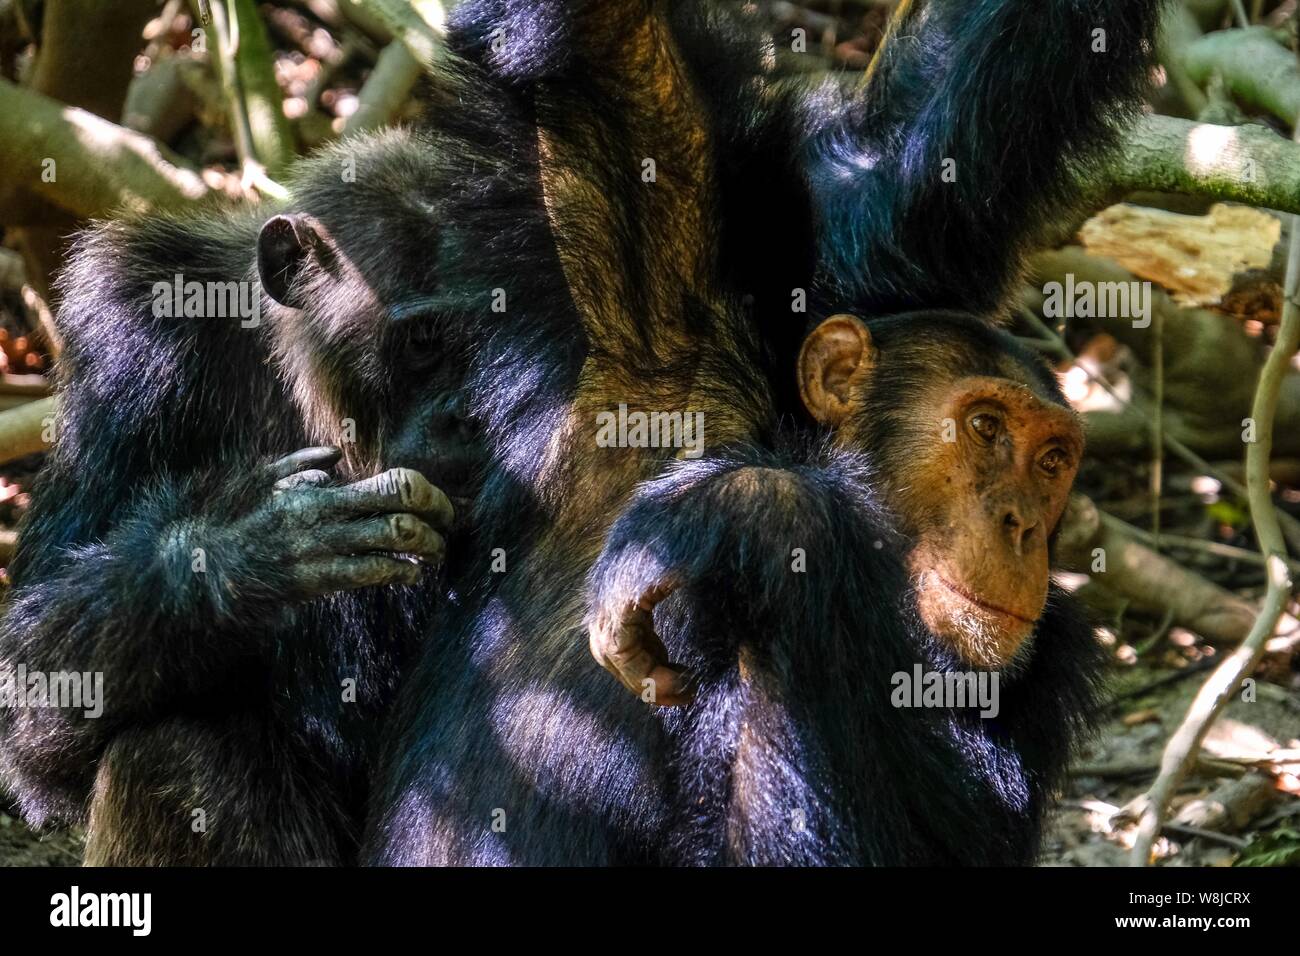 Gros plan d'un deux chimpanzés l'un à proximité de l'autre avec un arrière-plan naturel flou Banque D'Images